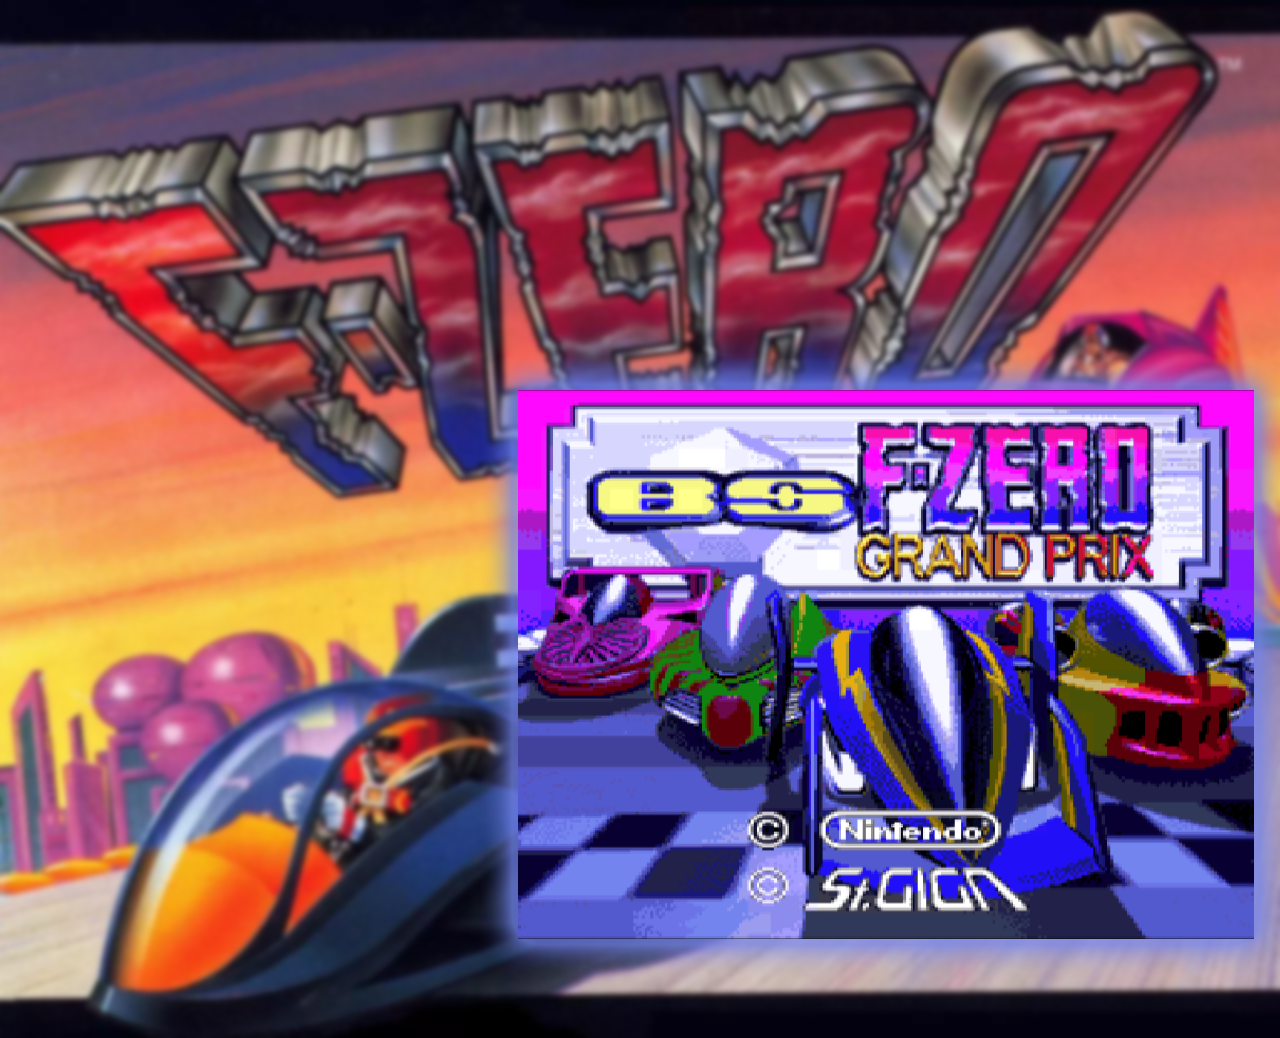 Satellaview - BS F-Zero Grand Prix